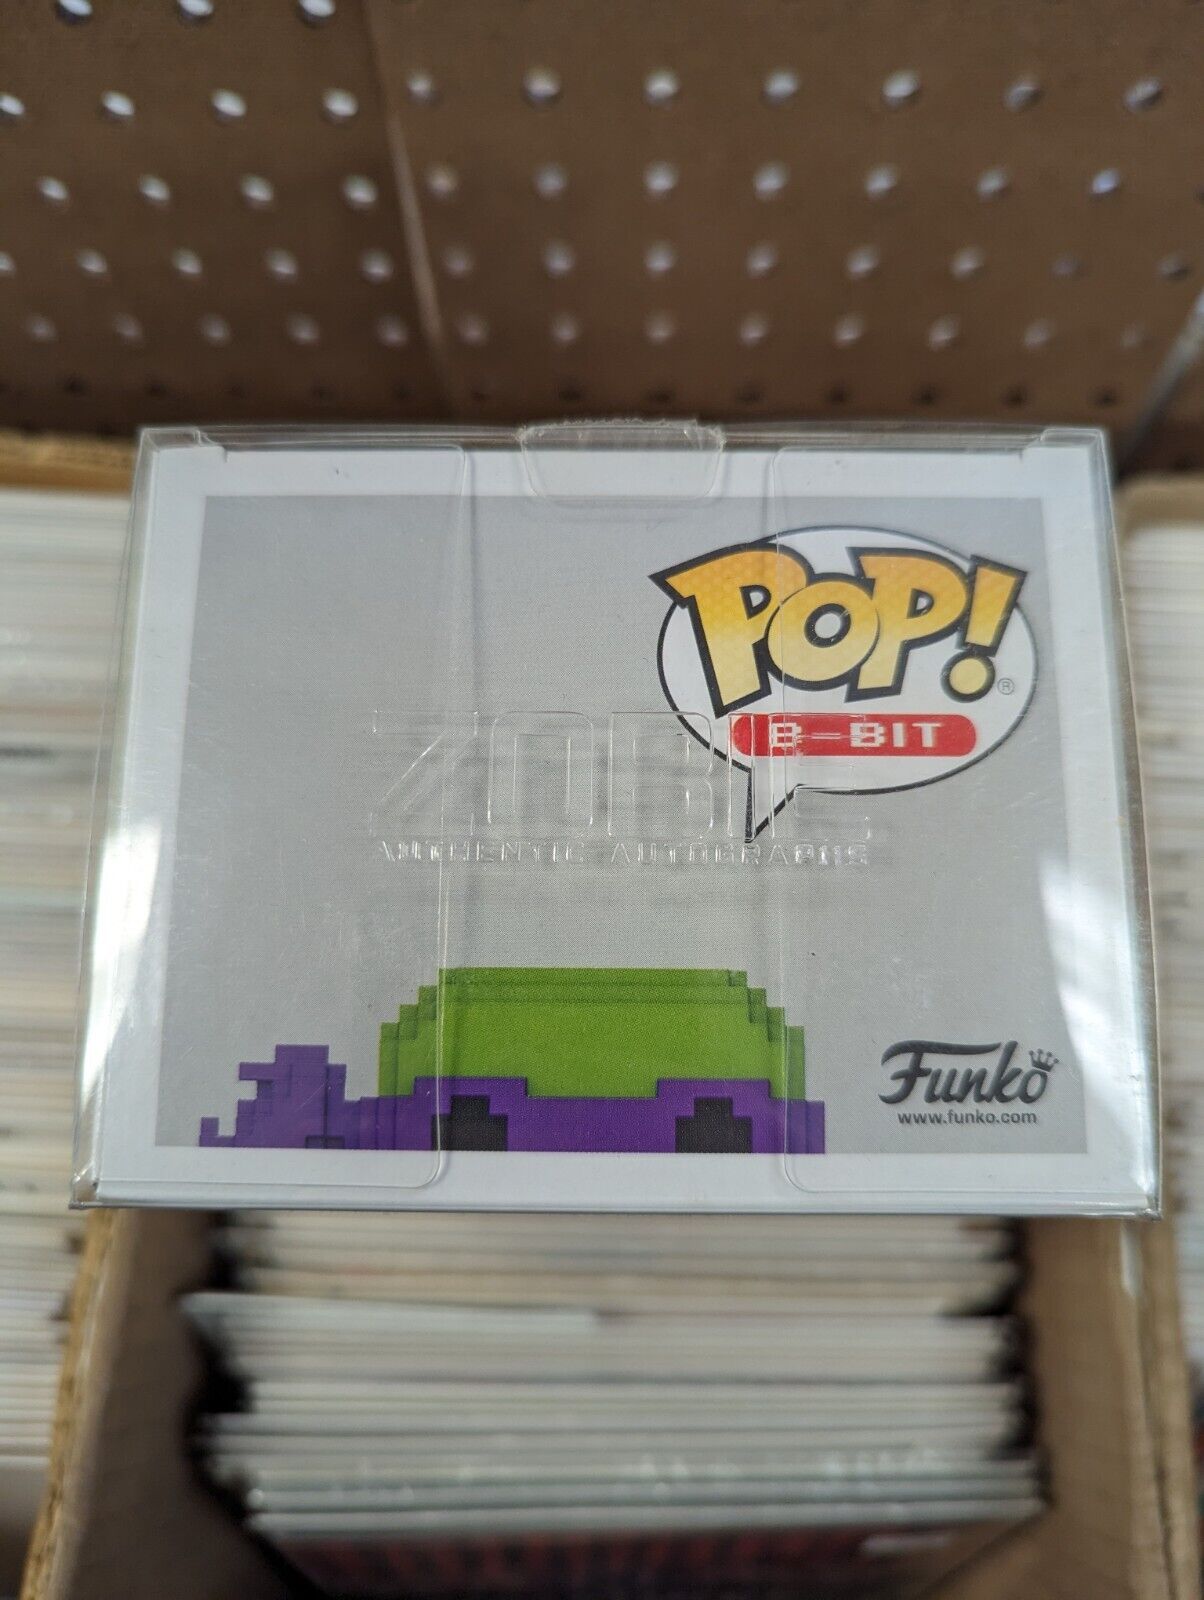 Funko Pop Donatello 05 8-bit Neon Funko Shop 7BAP Signed Barry Gordon With COA